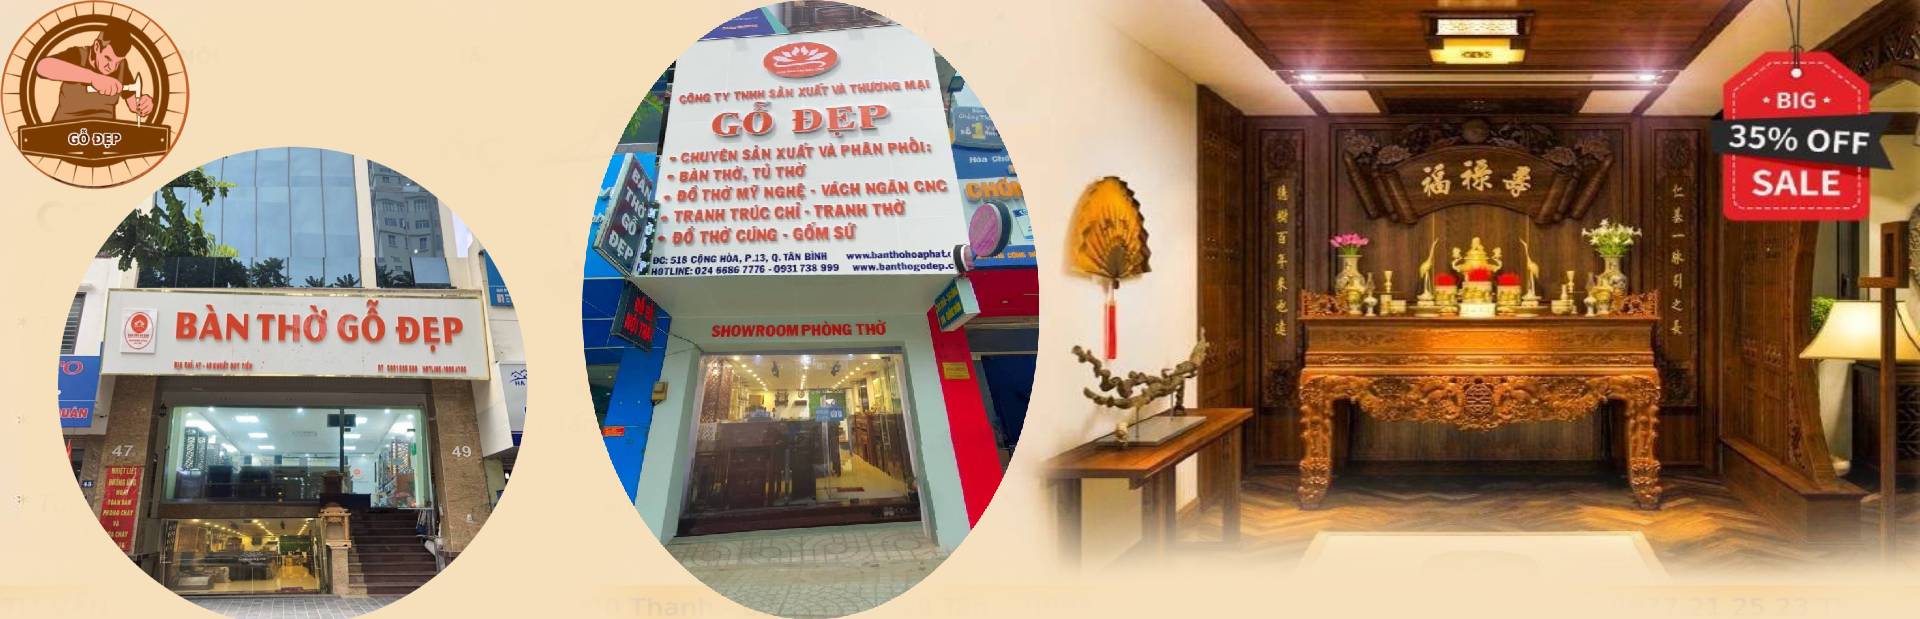 Hình ảnh địa chỉ cửa hàng tại Hà Nội và Hồ Chí Minh 